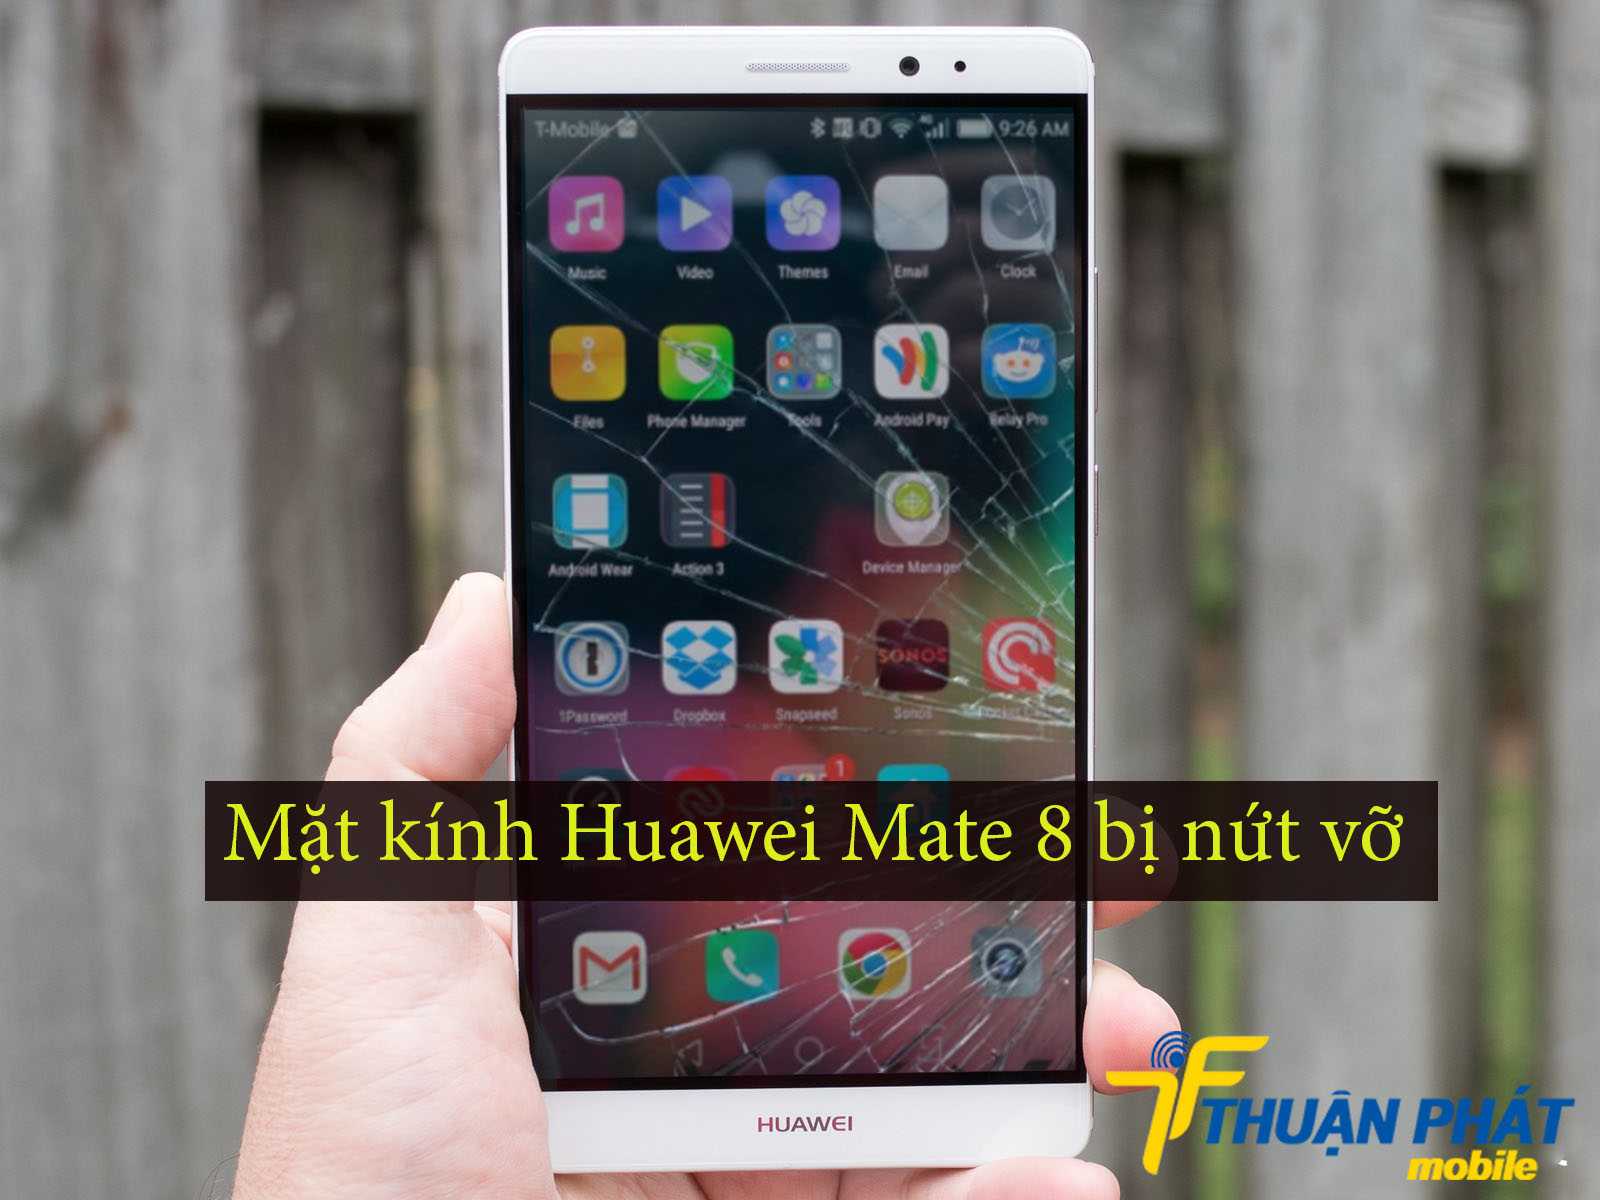 Mặt kính Huawei Mate 8 bị nứt vỡ